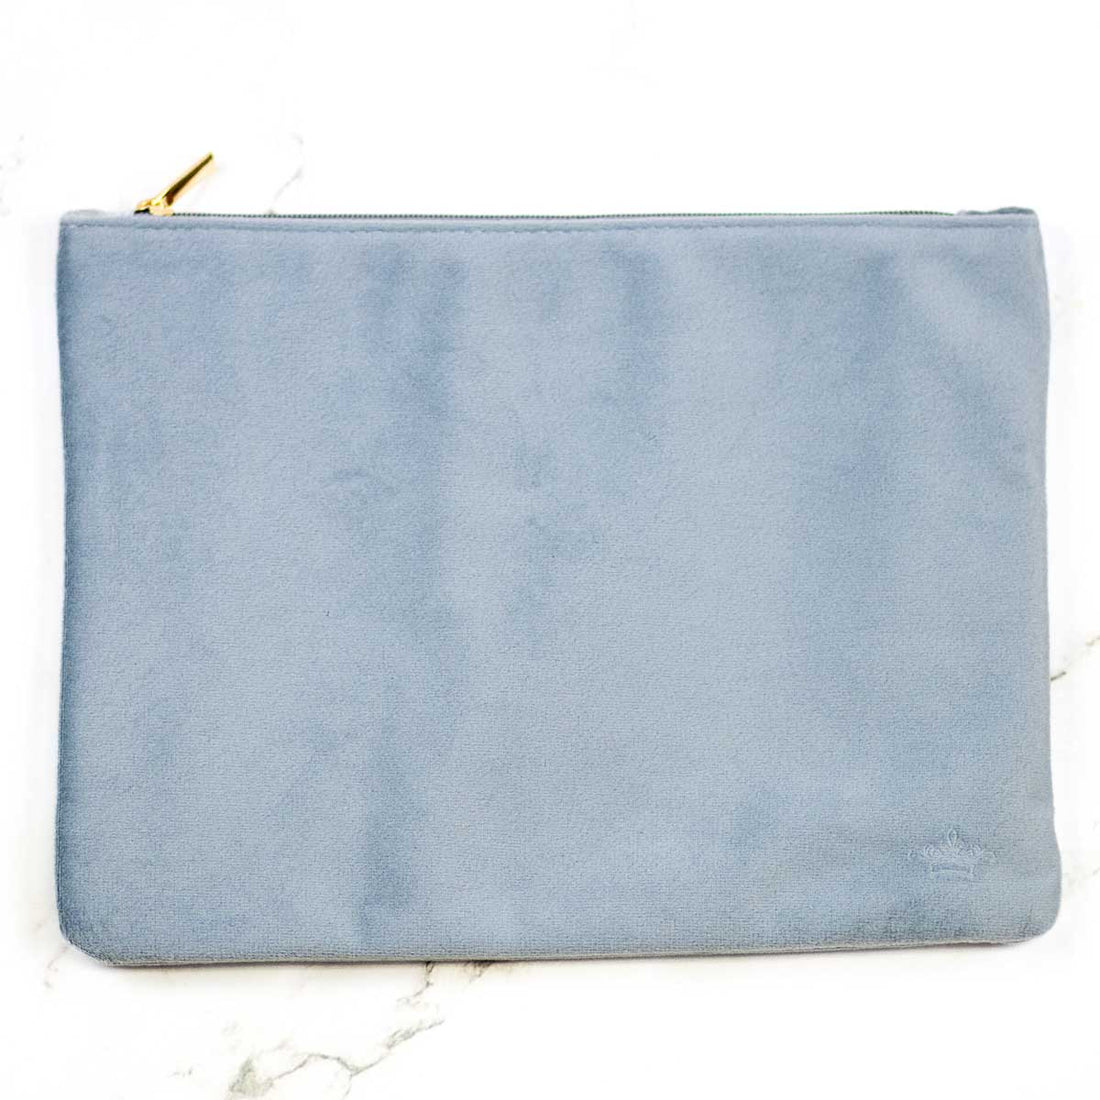 The Royal Standard Velvet Cosmetic Bag- Light Blue